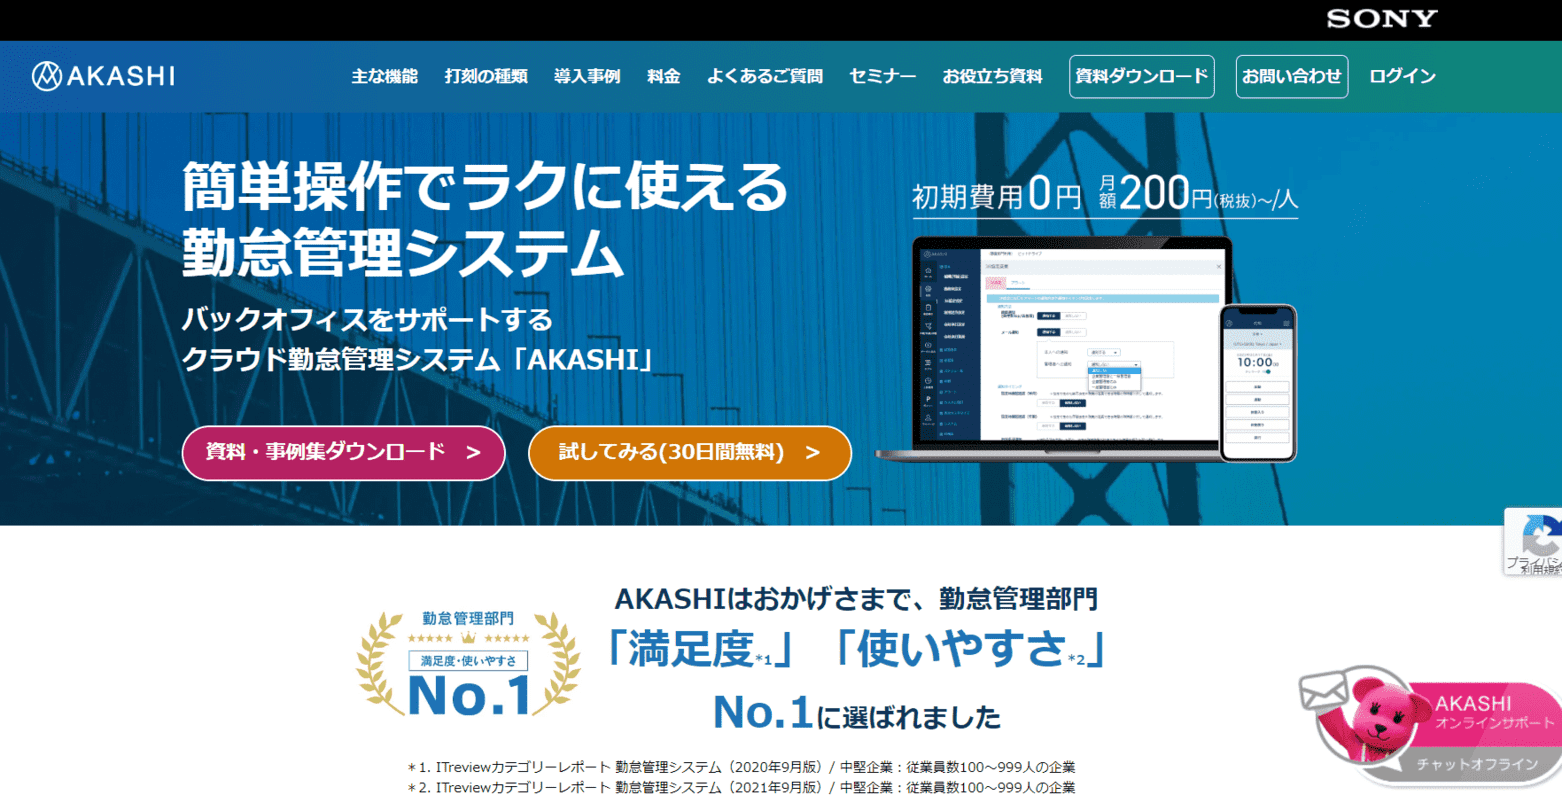 AKASHI 公式サイト